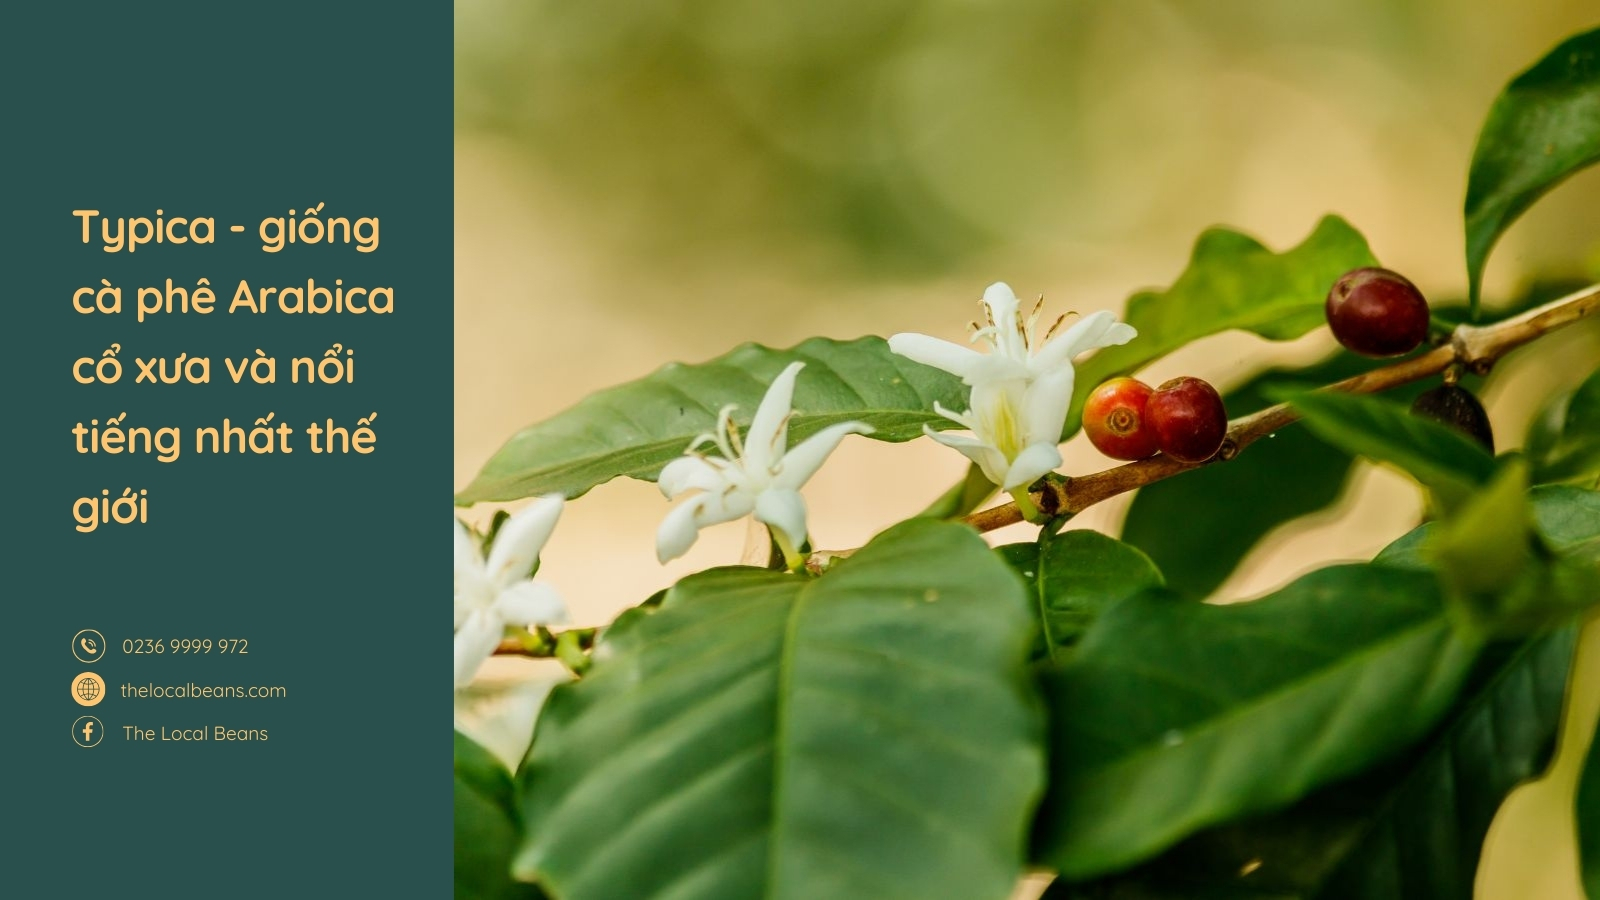 hình ảnh cây cà phê và hoa cà phê typica là gì